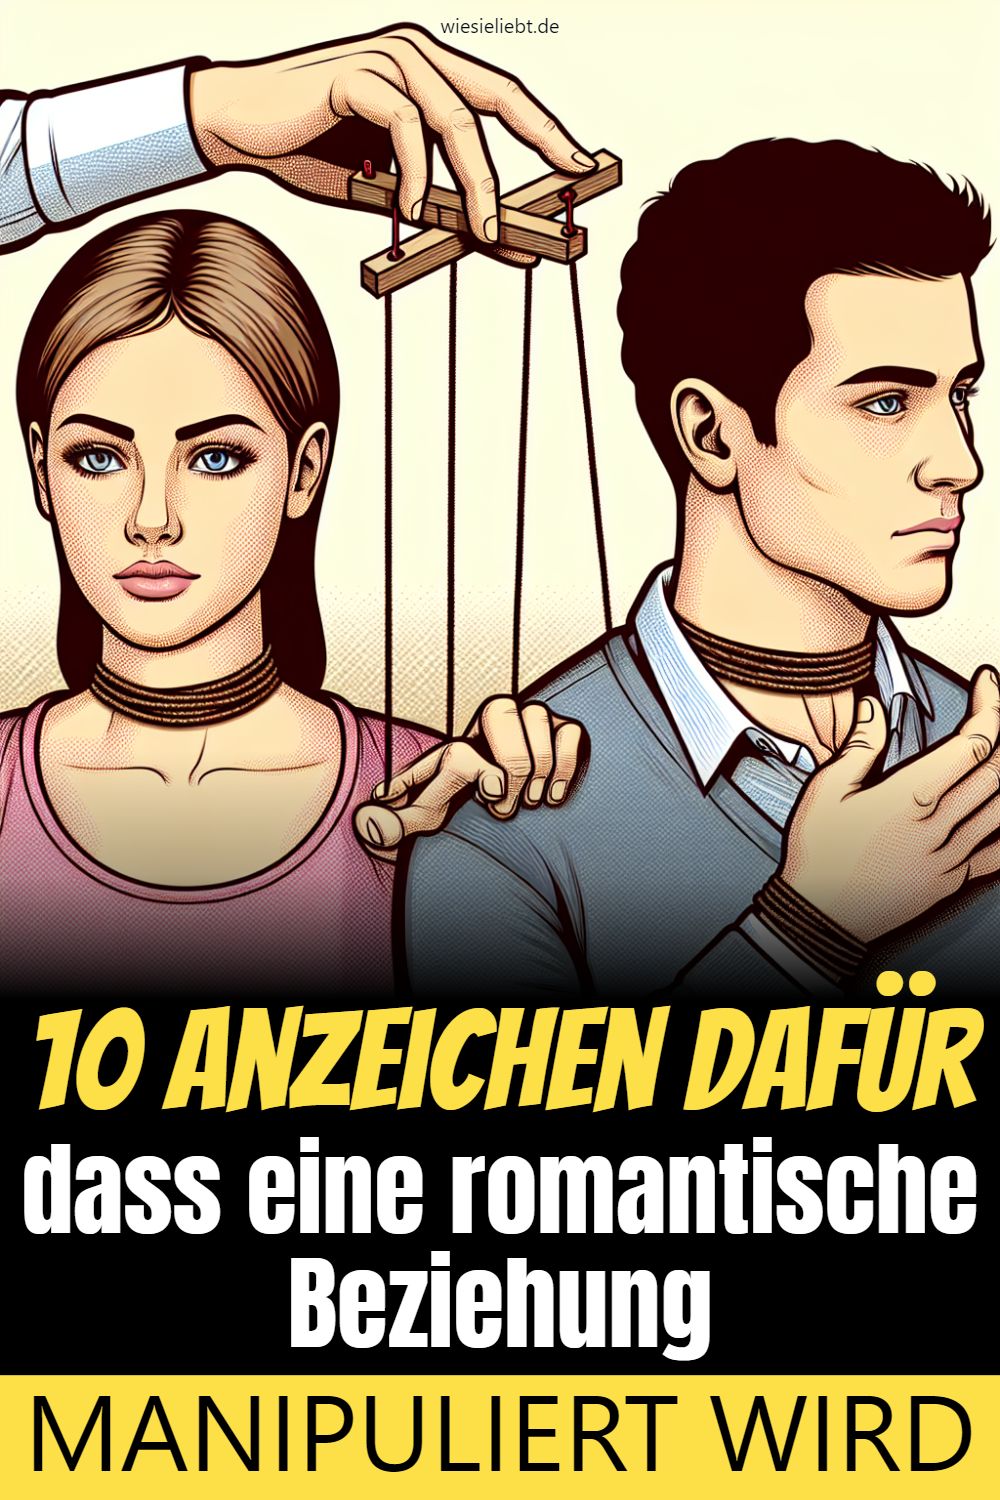 10 Anzeichen dafür dass eine romantische Beziehung MANIPULIERT WIRD